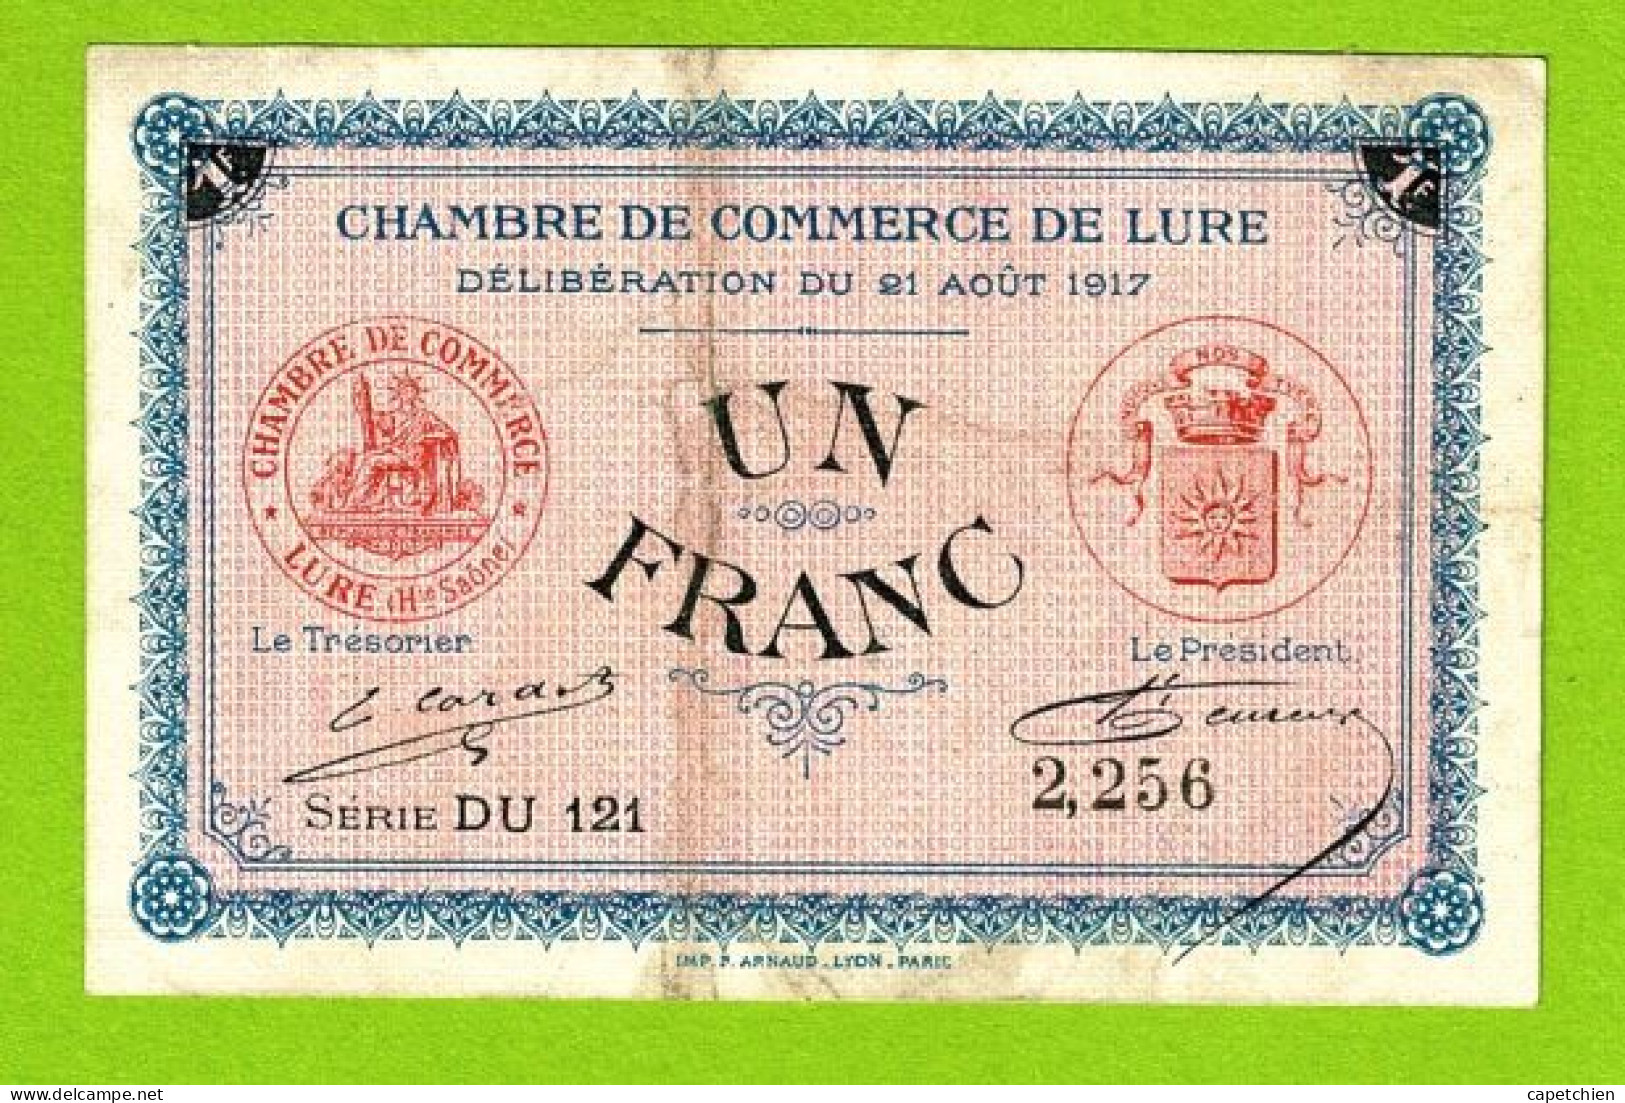 FRANCE / LURE / 1 FRANC / 21 AOUT 1917 / N° 2256 / SERIE DU121 / 6eme EMISSION - Cámara De Comercio